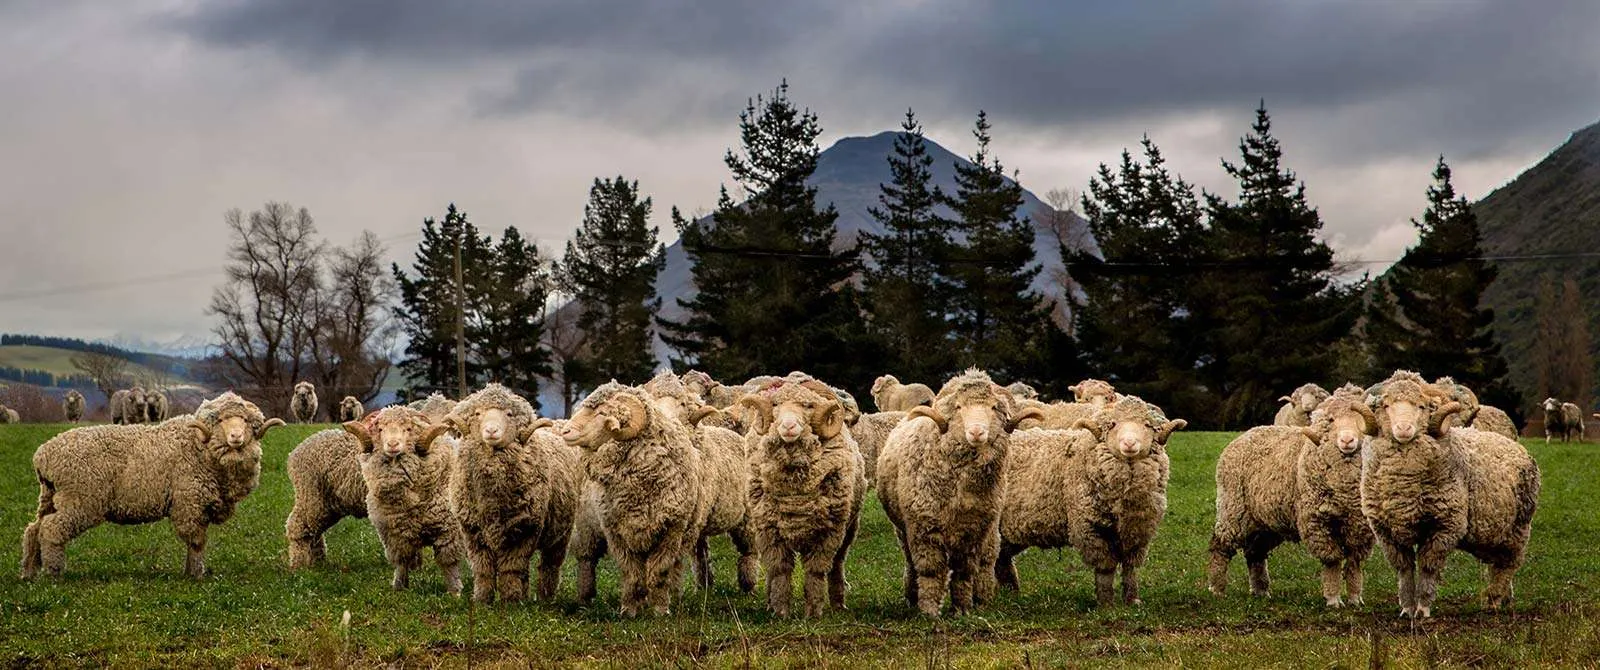 The Merino Sheep - World's Finest Wool